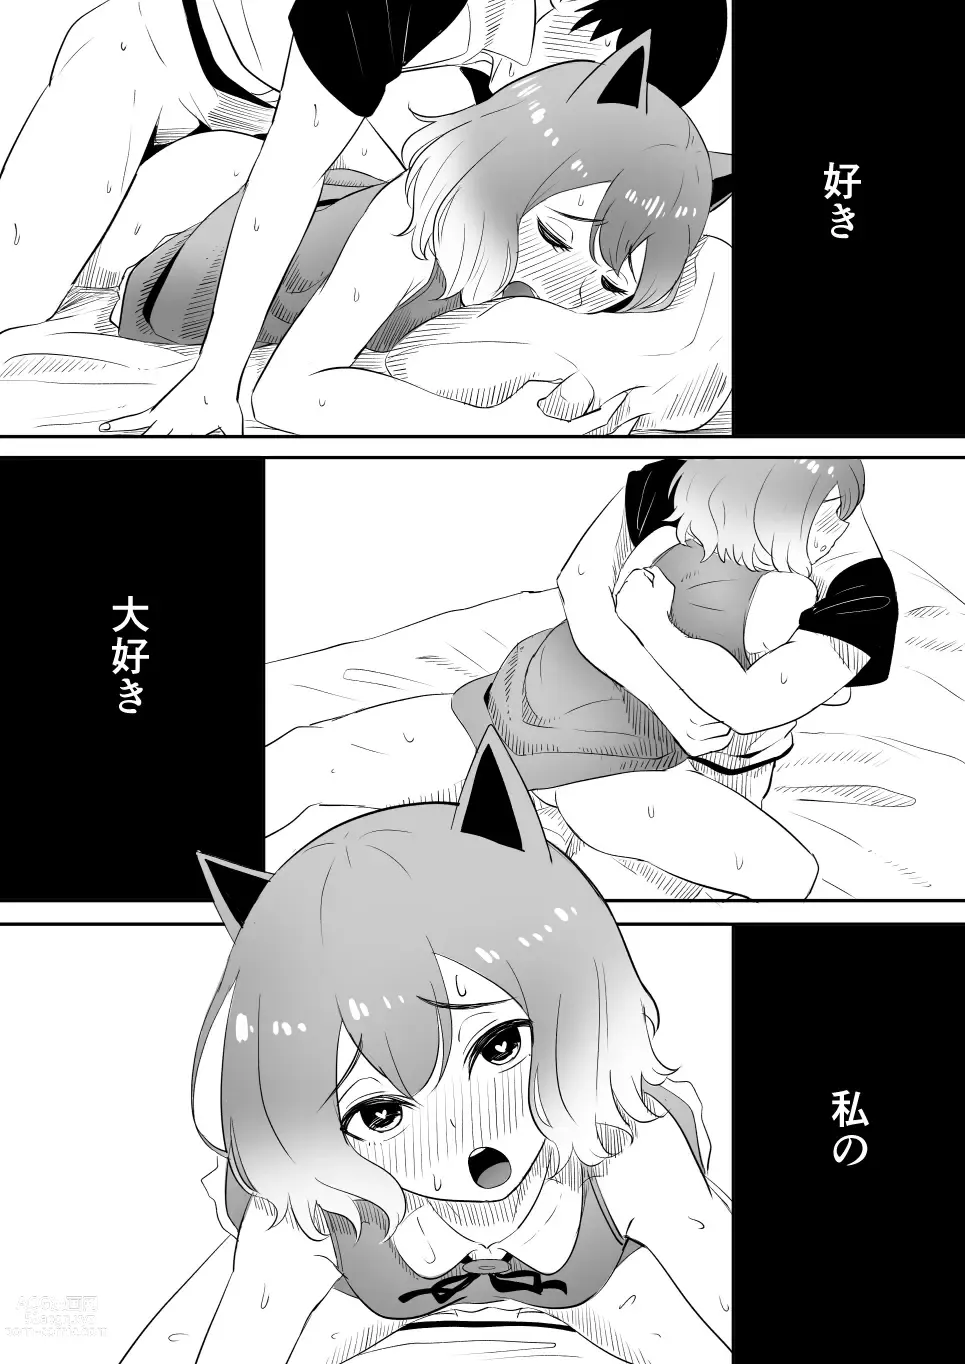 Page 30 of doujinshi Koi o Shita Sleeper-chan.